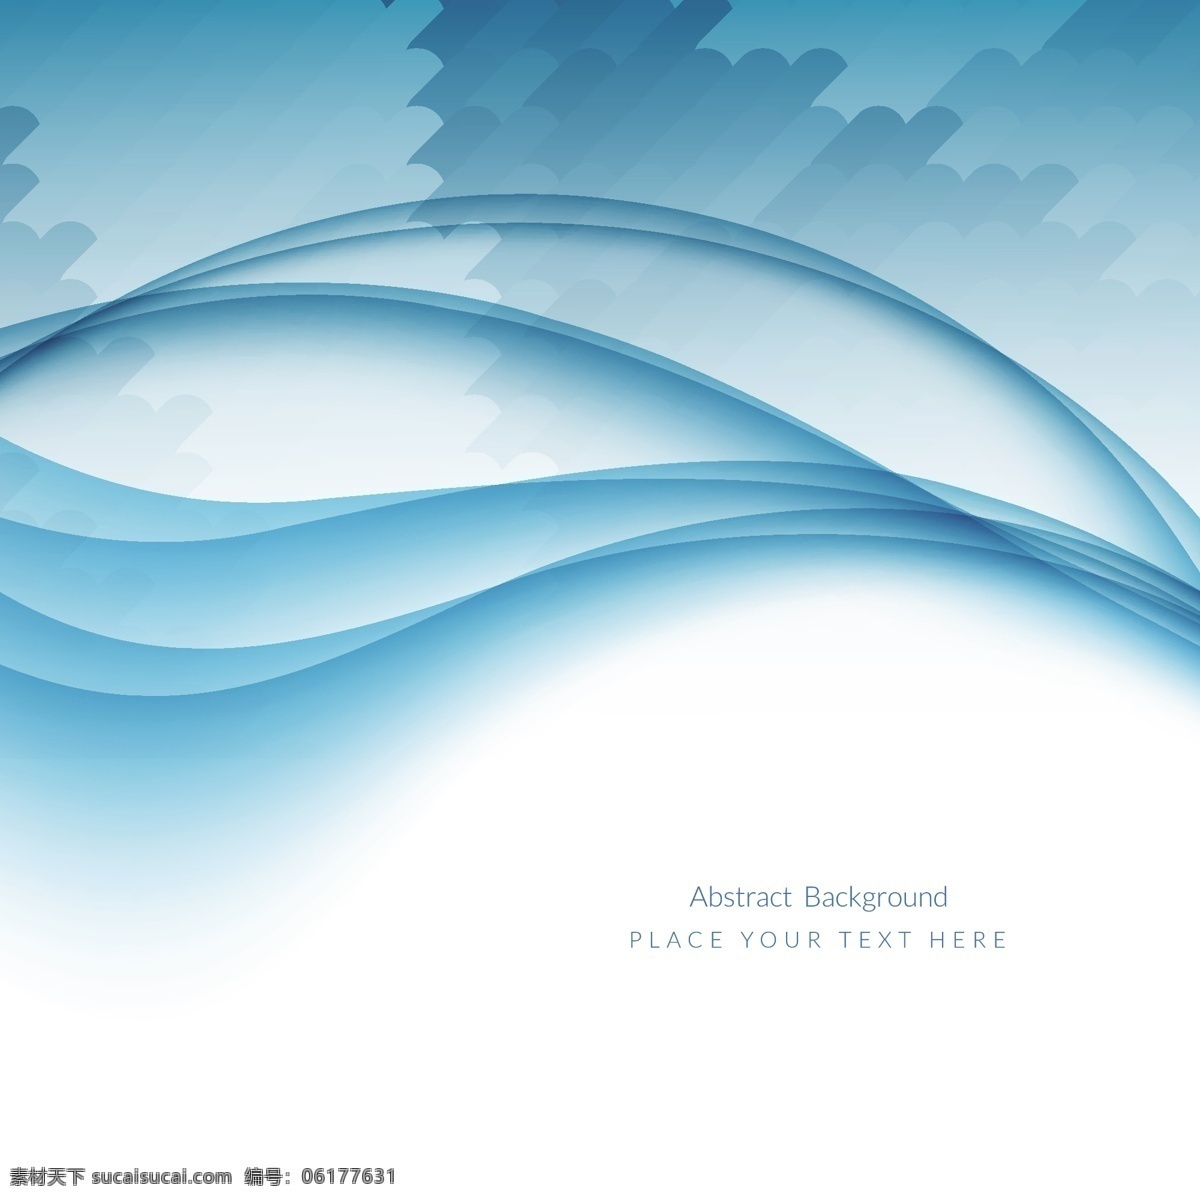 美丽 蓝色 浪潮 背景 名片 抽象背景 商业 抽象 模板 波浪 蓝色背景 颜色 壁纸 优雅 条纹 现代 曲线 海报模板 抽象设计 抽象波 白色